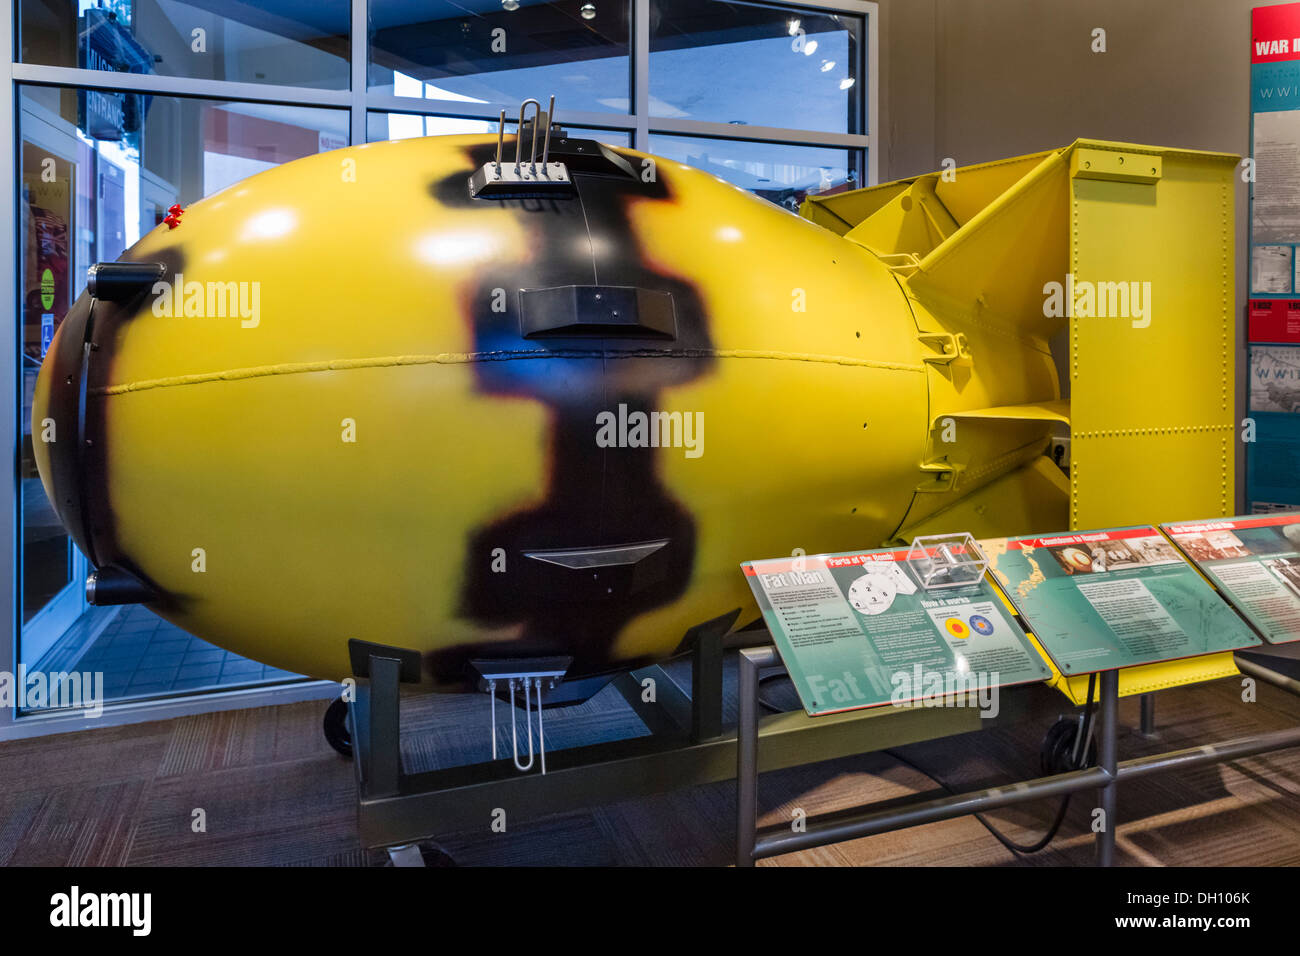 Bomba nucleare. Modello della bomba atomica "Fat Man' sceso onNagasaki, Giappone nella seconda guerra mondiale, il Bradbury Science Museum di Los Alamos, Nuovo Messico, STATI UNITI D'AMERICA Foto Stock